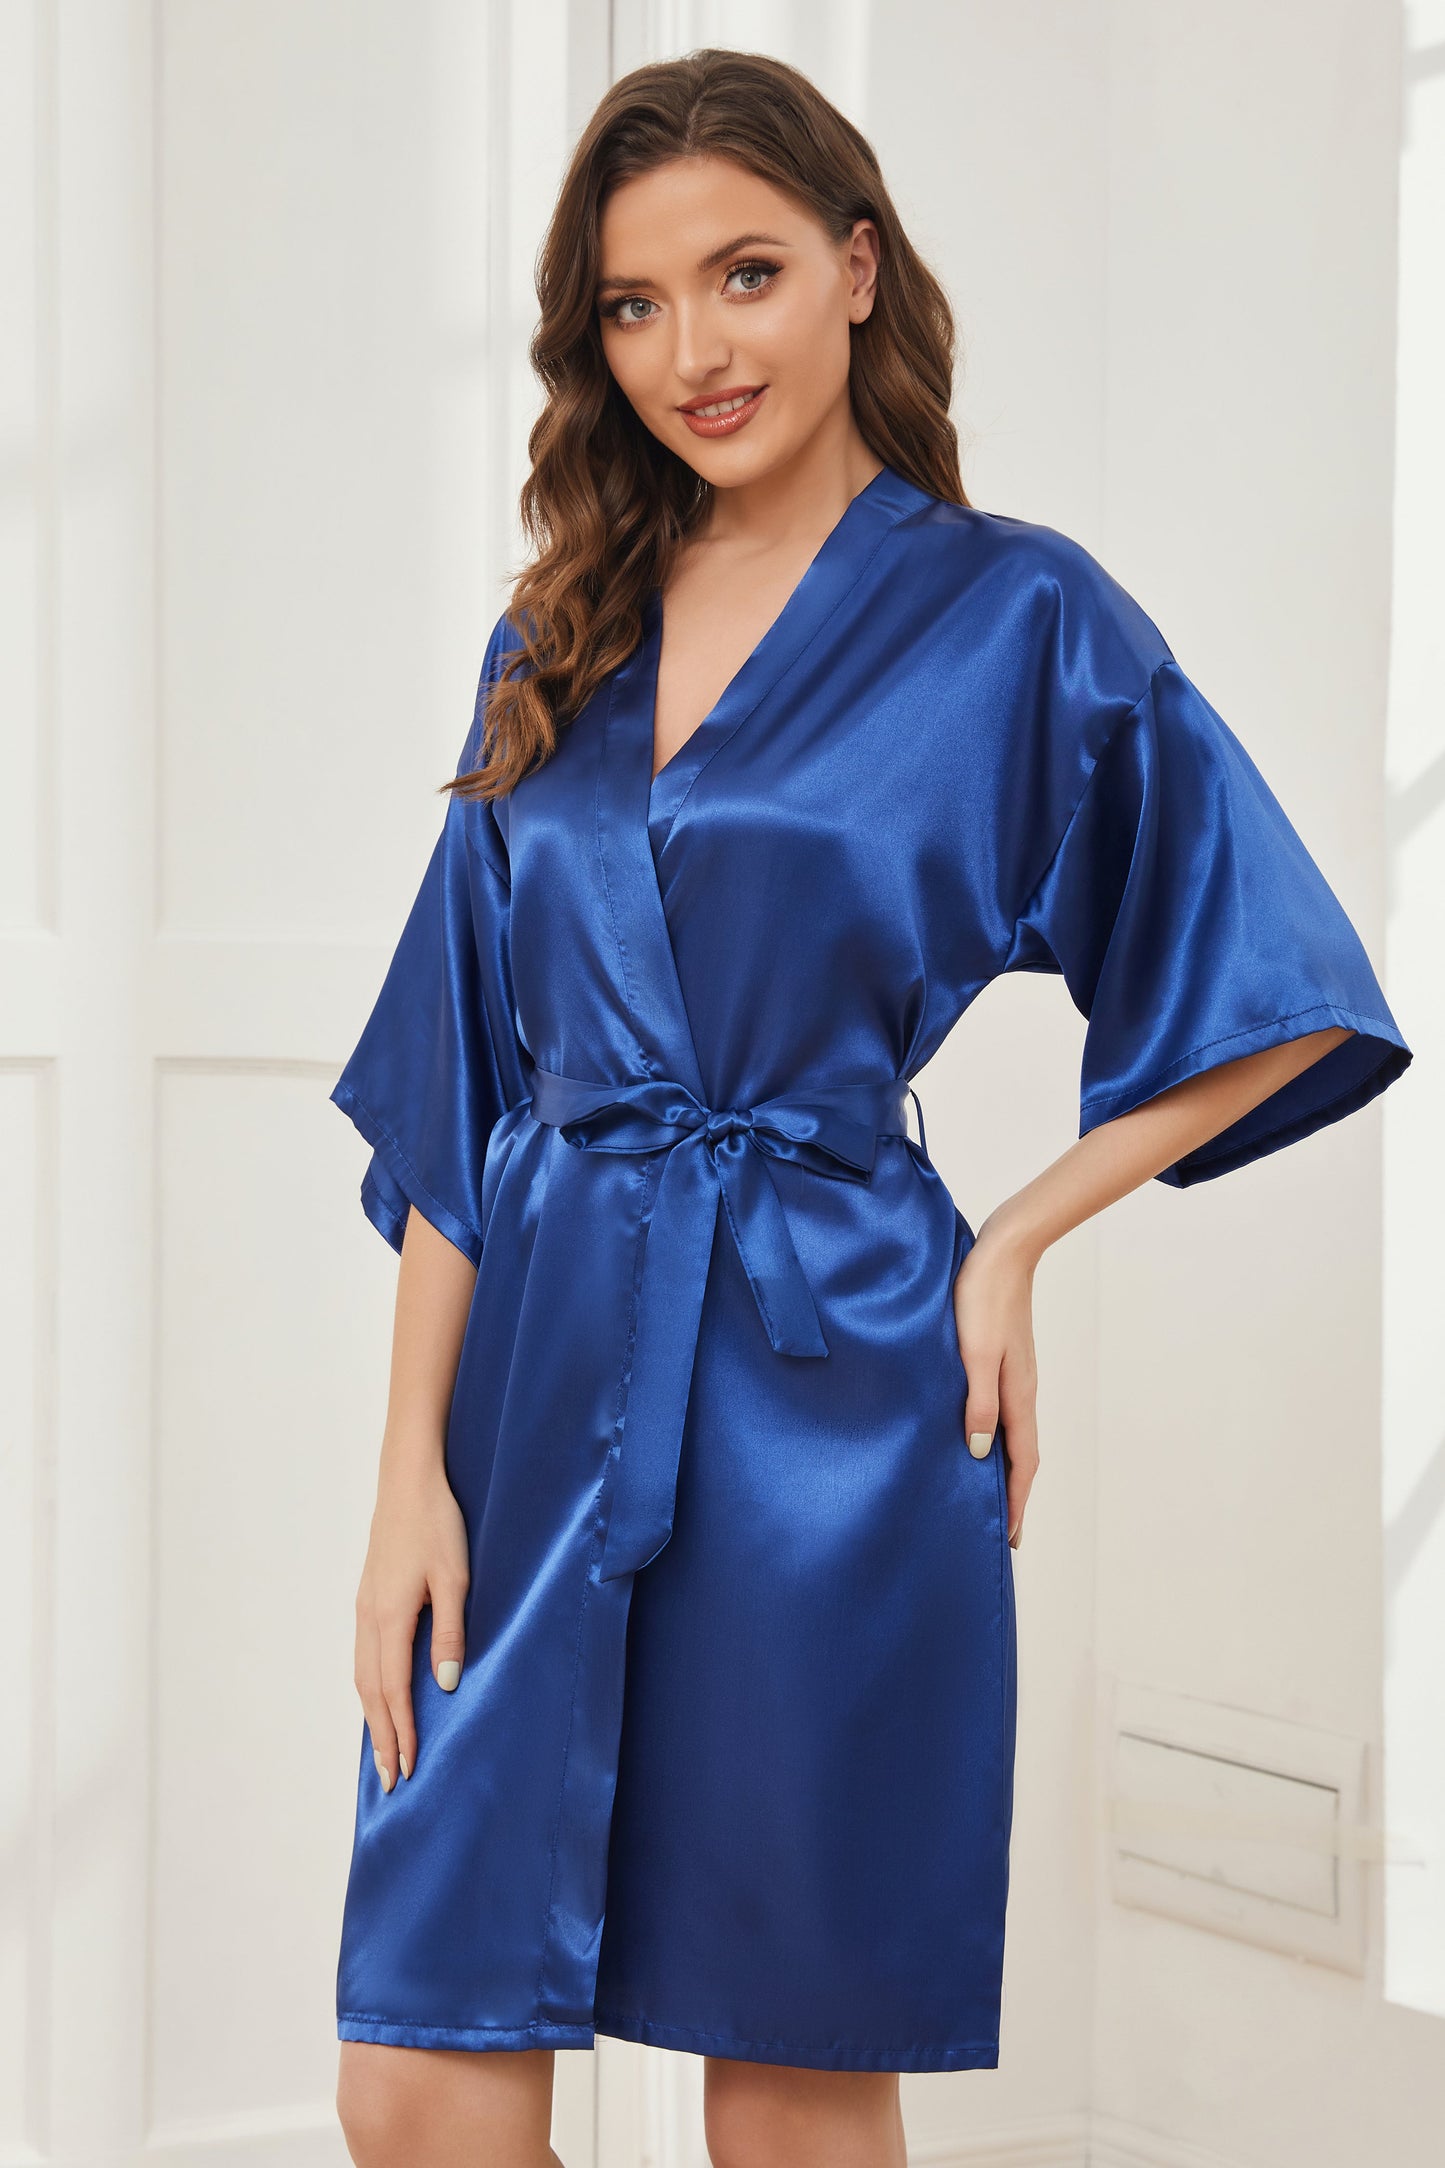 Ready Satin Royal Blue Robe for Bridesmaid